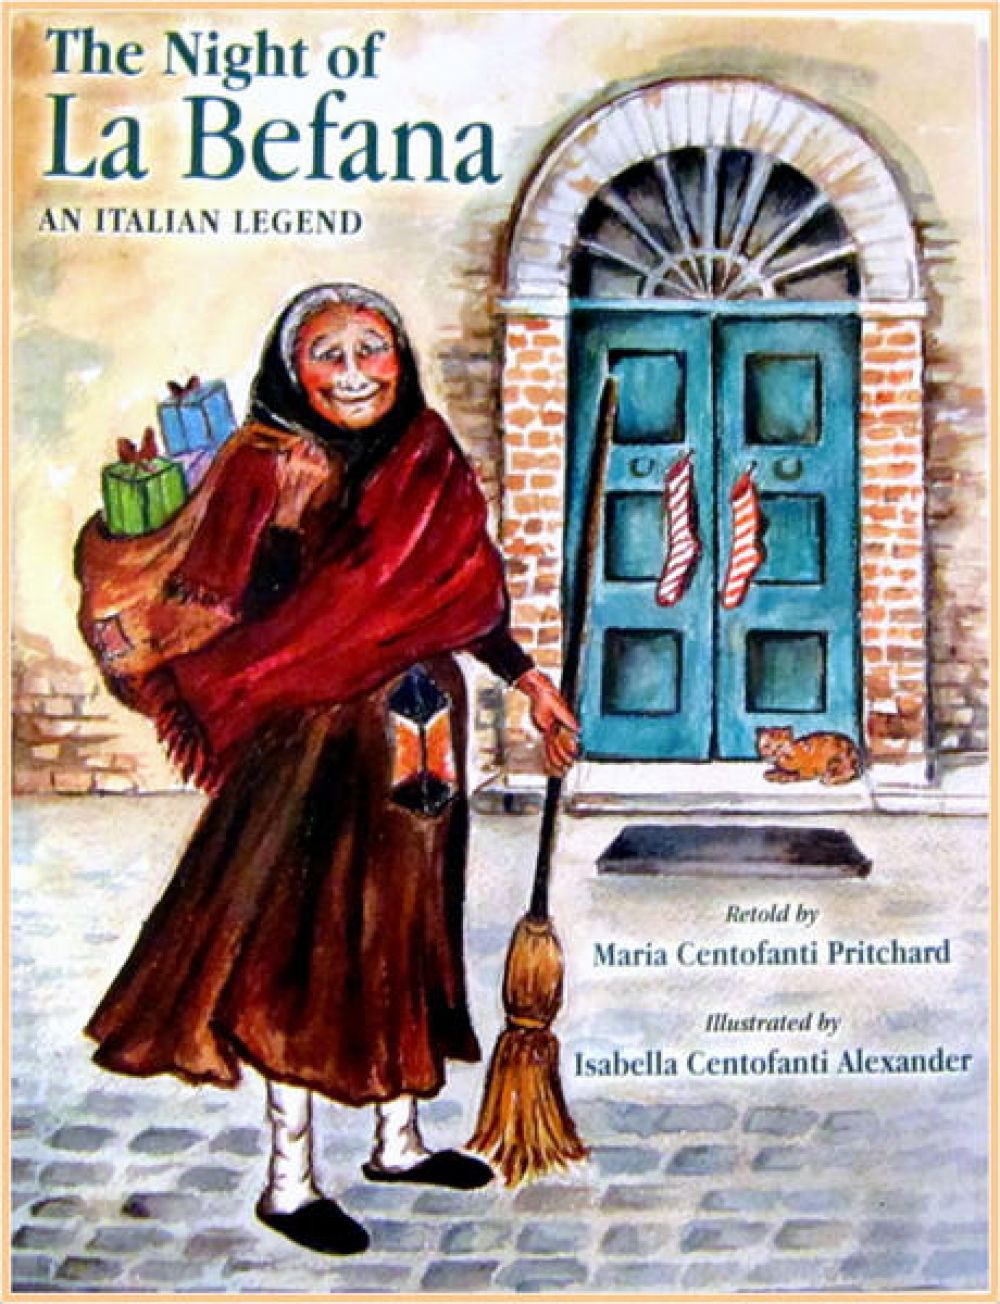 La Befana - Italian Heritage Society of Indiana